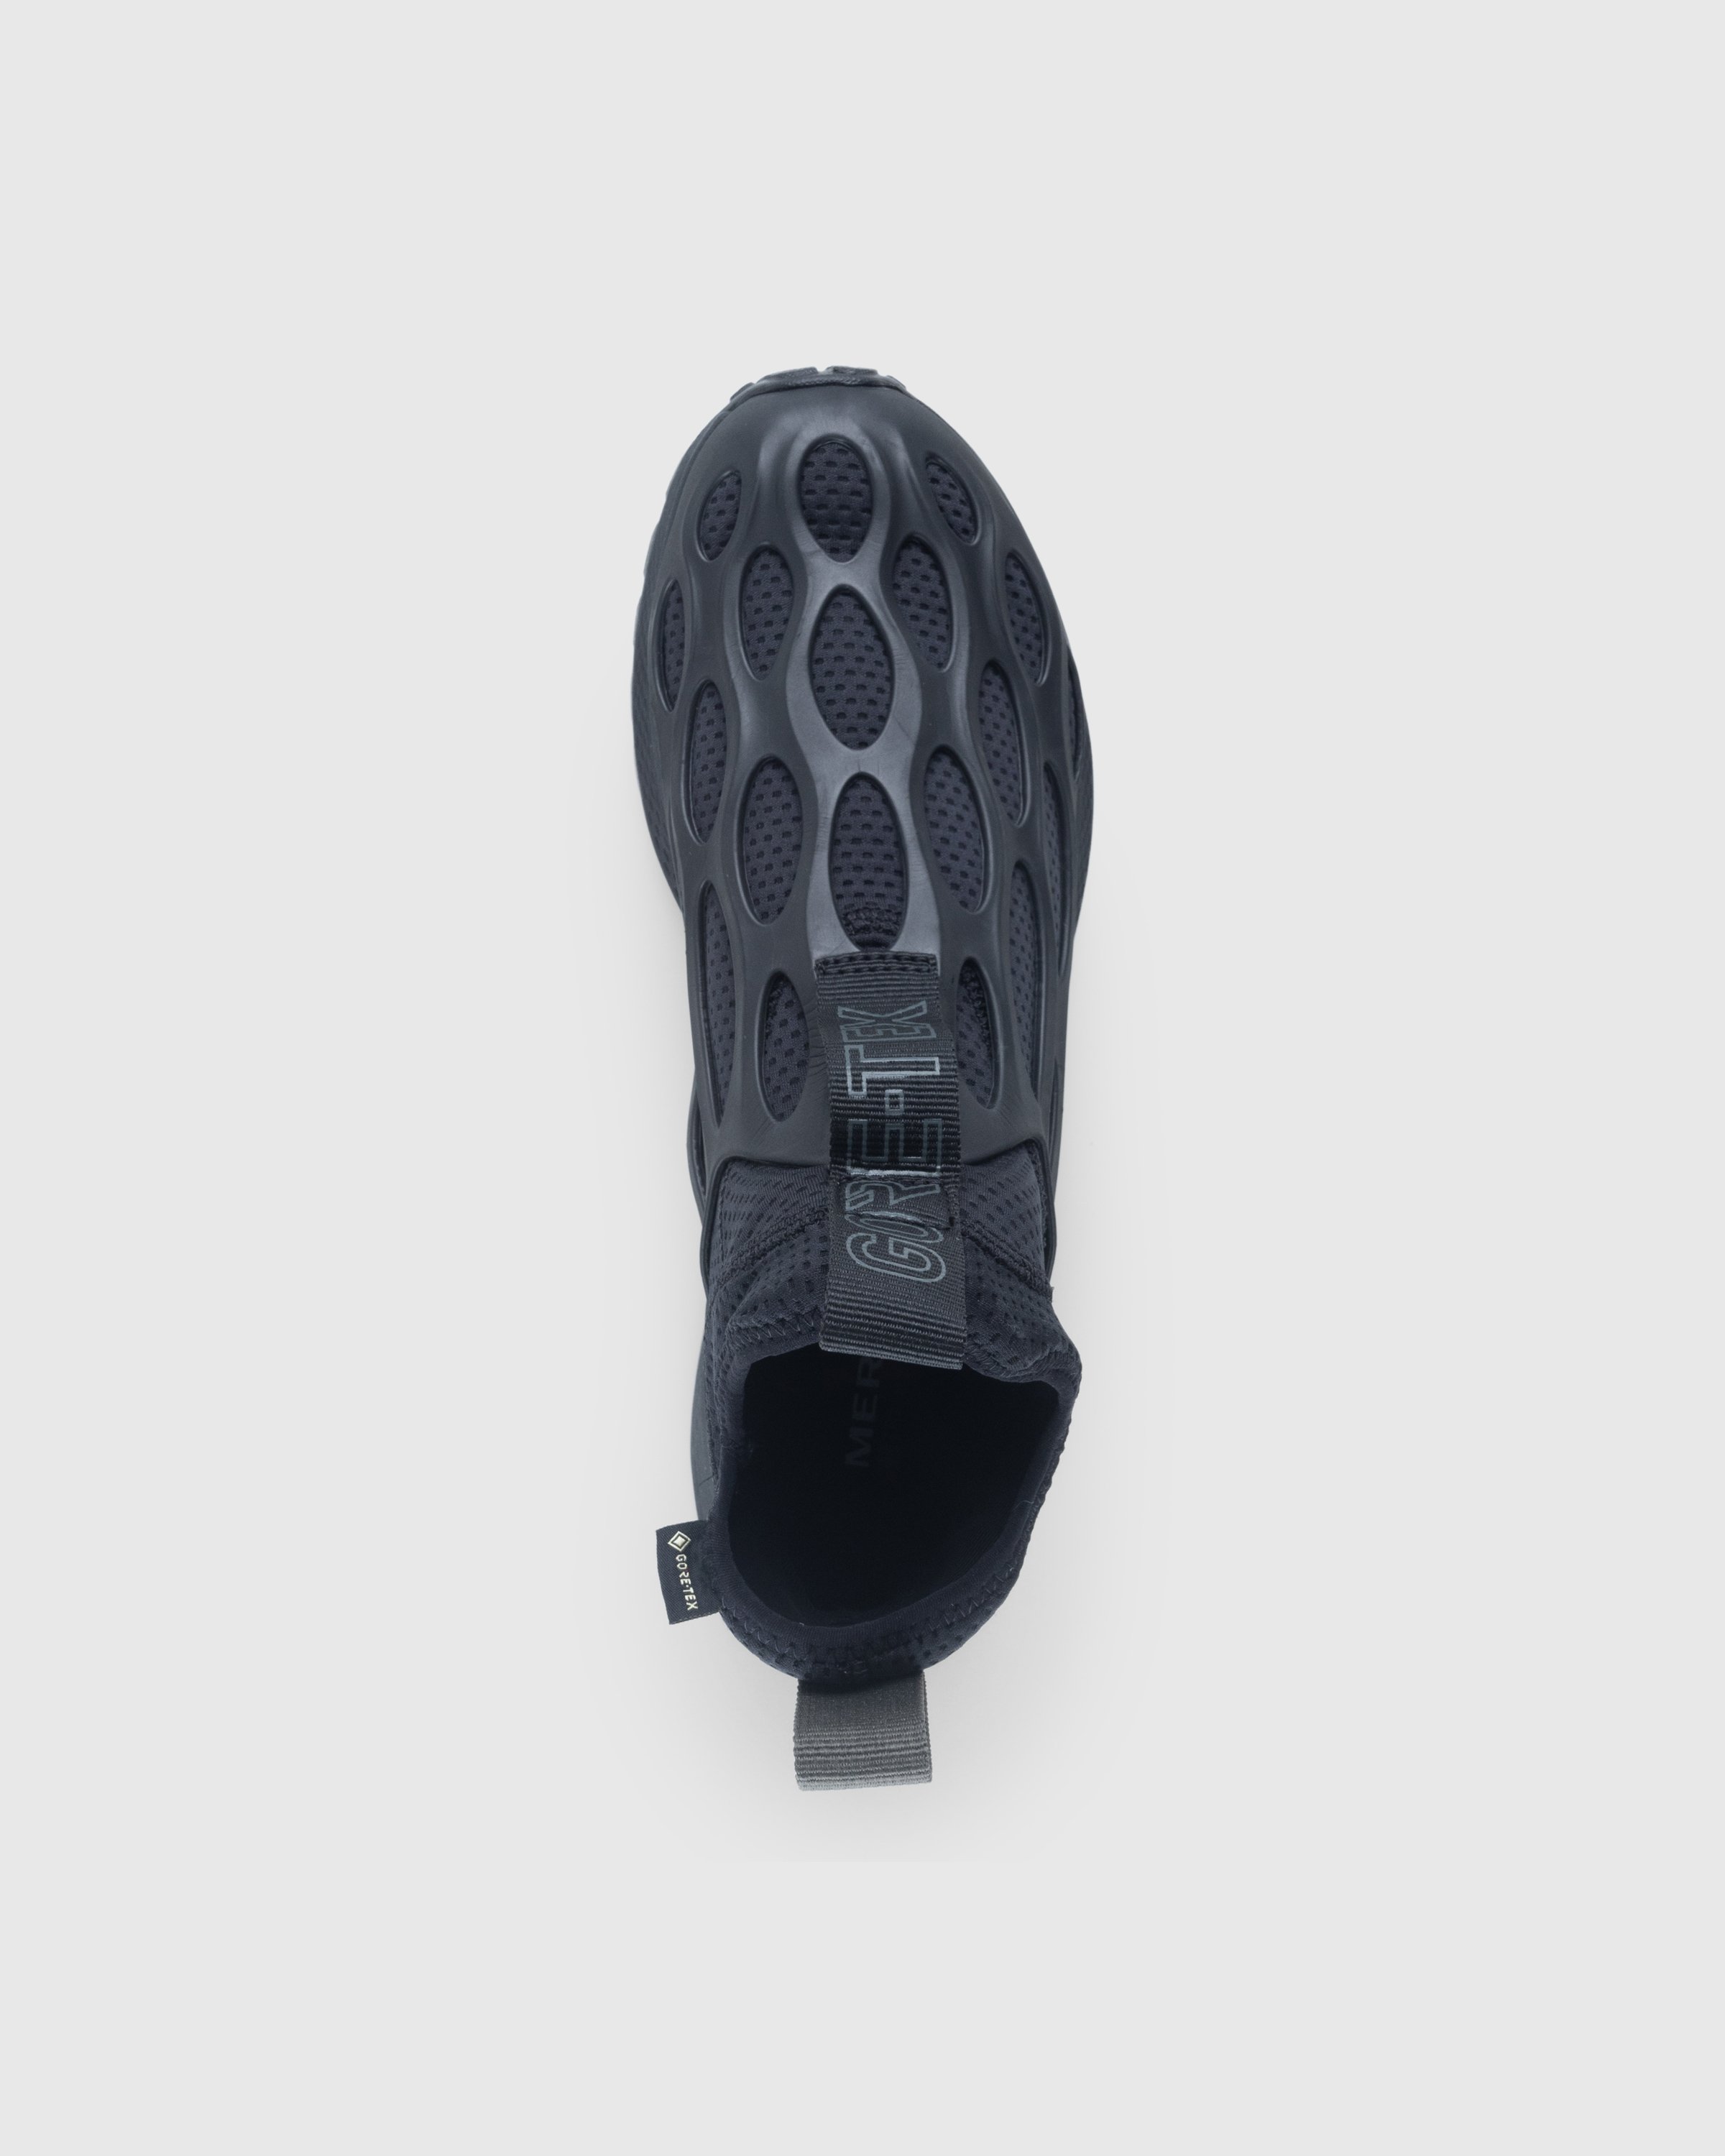 Merrell - HYDRO RUNNER MID GTX SE - Footwear - Black - Image 5